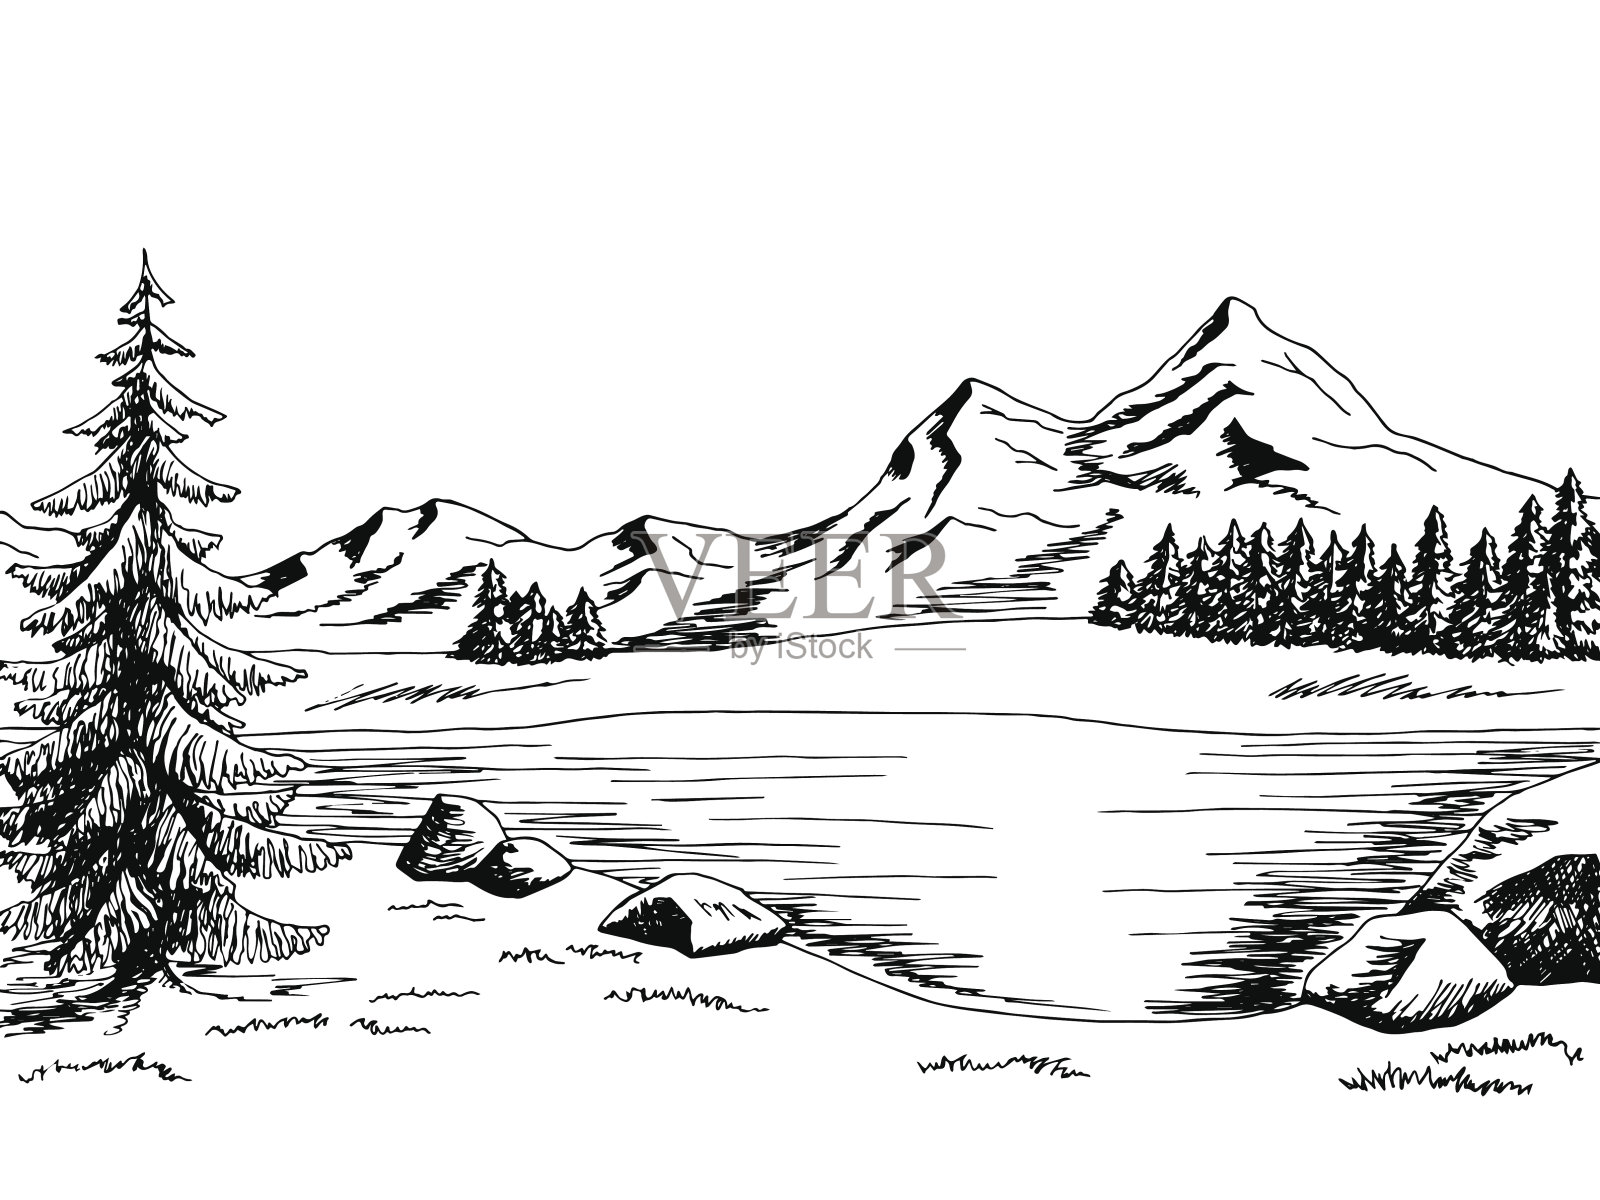 山湖图形艺术黑白景观插画矢量设计元素图片